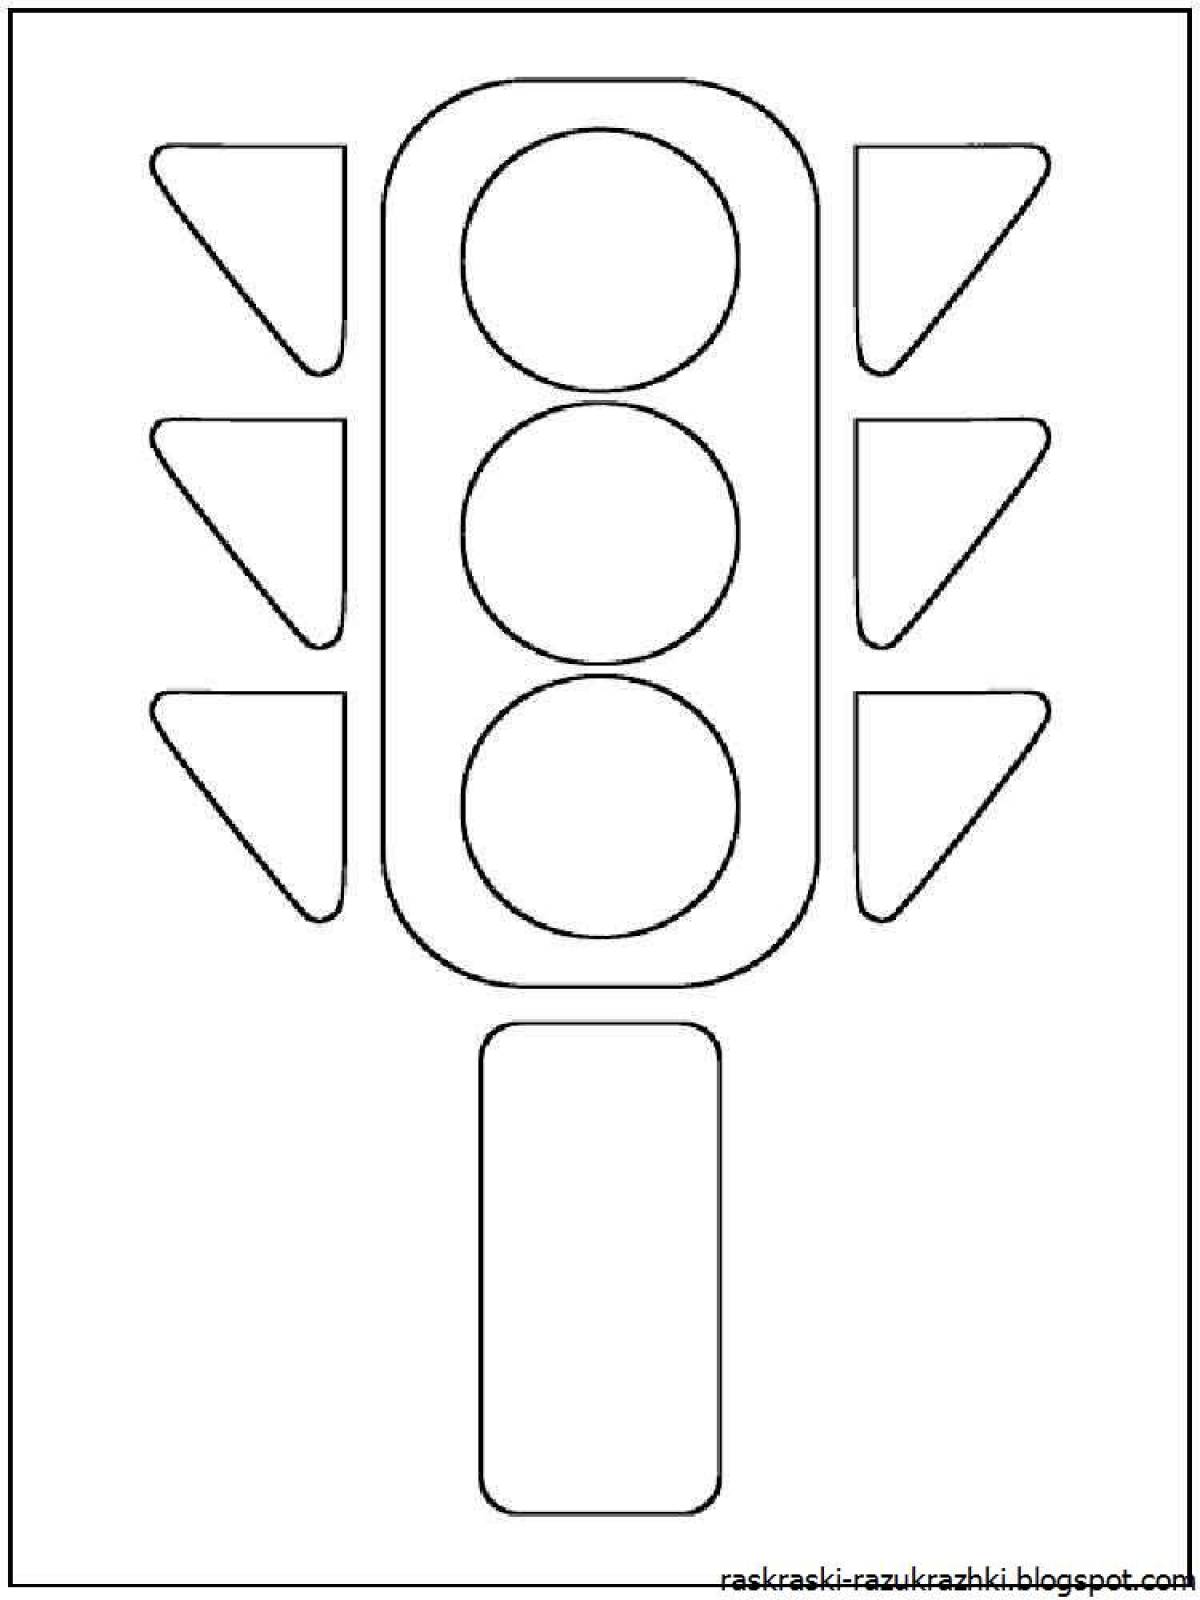 Traffic light for children #10